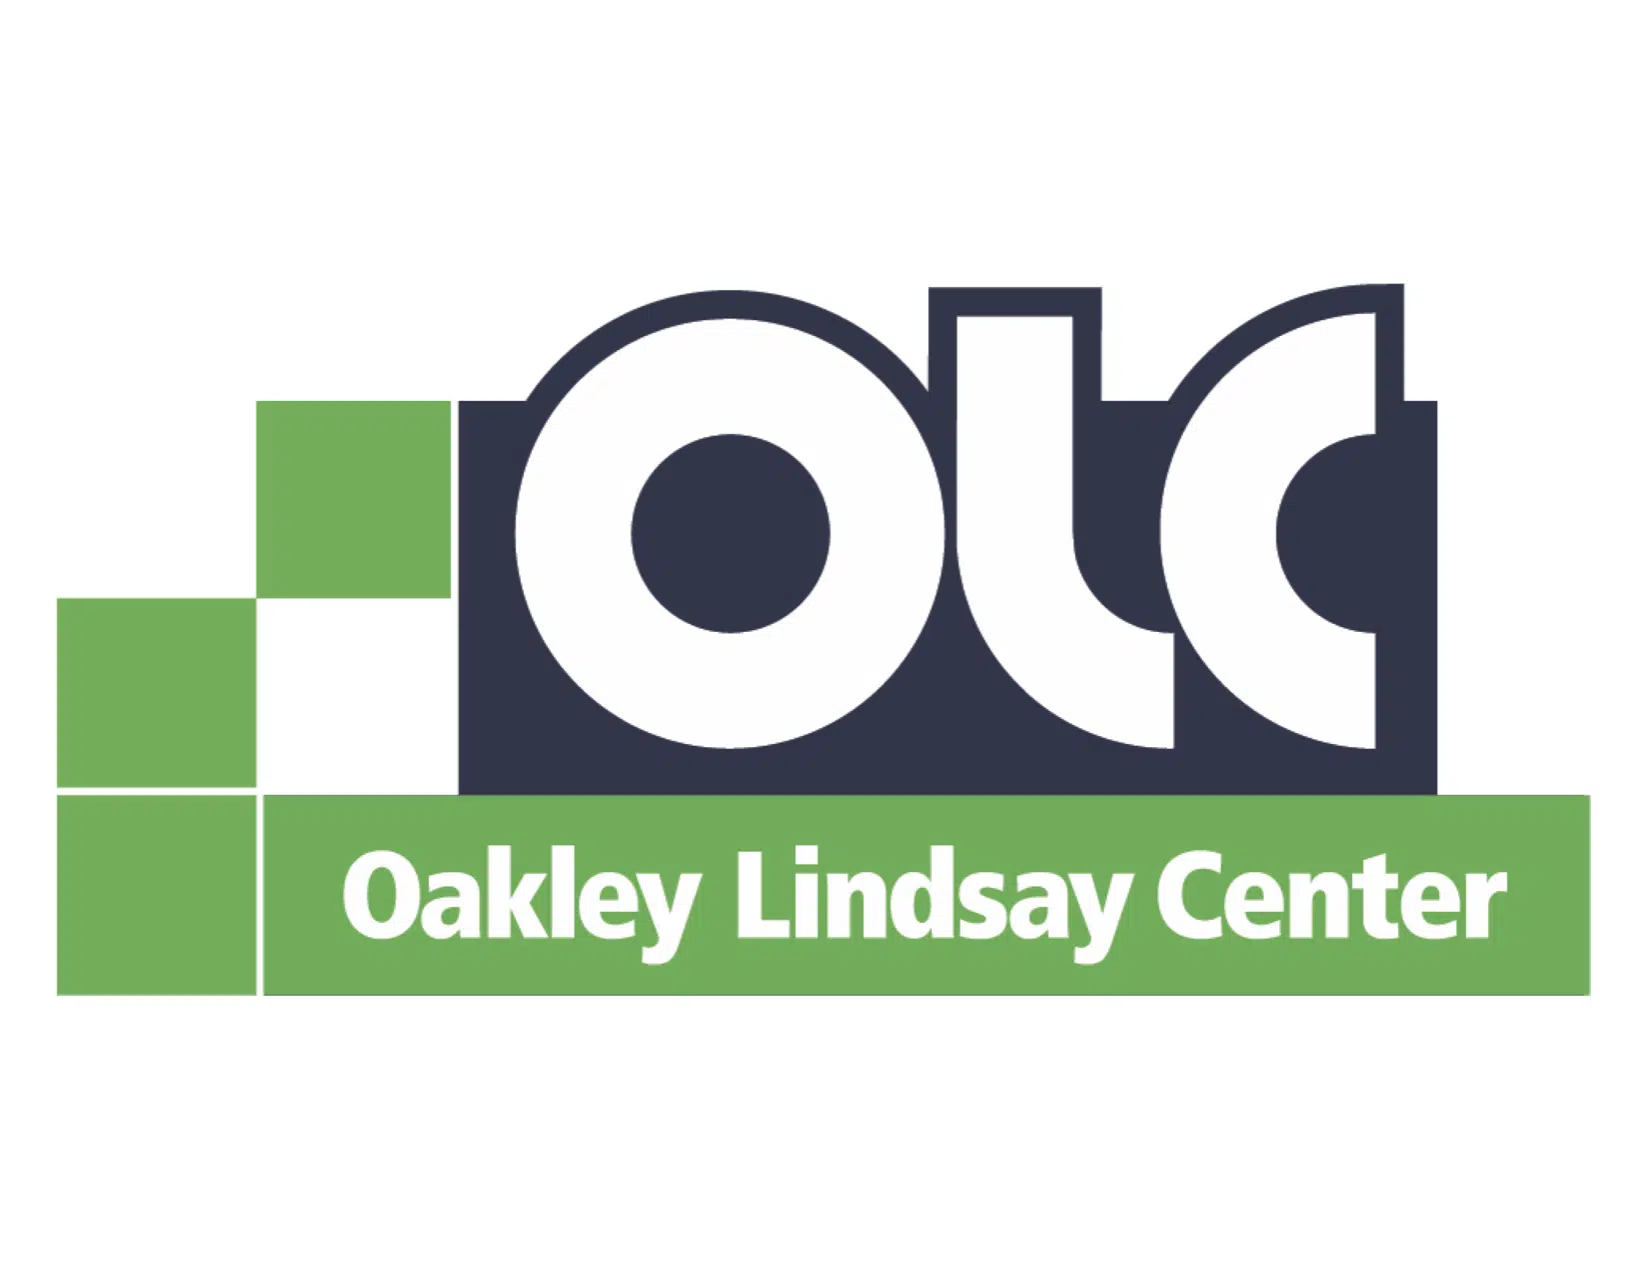 Oakley-Lindsay Center